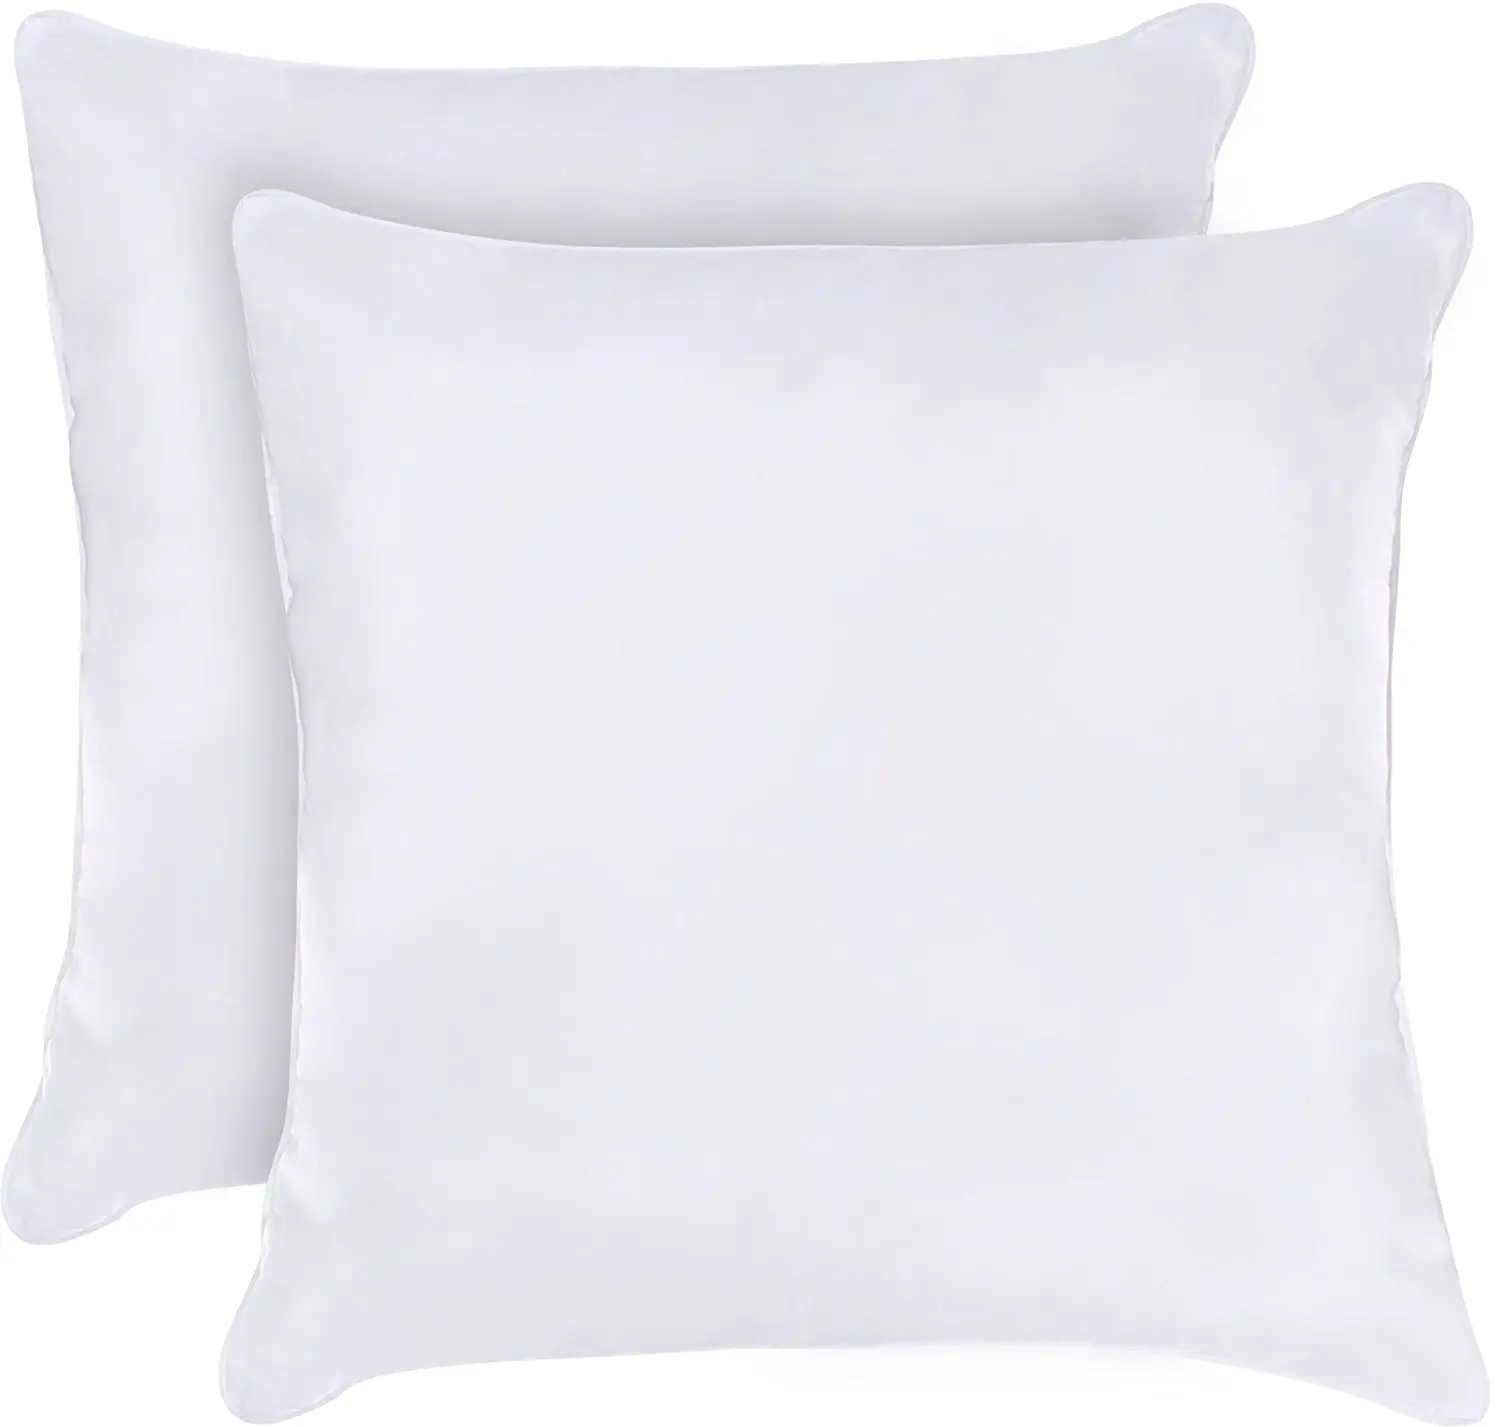 large pillows